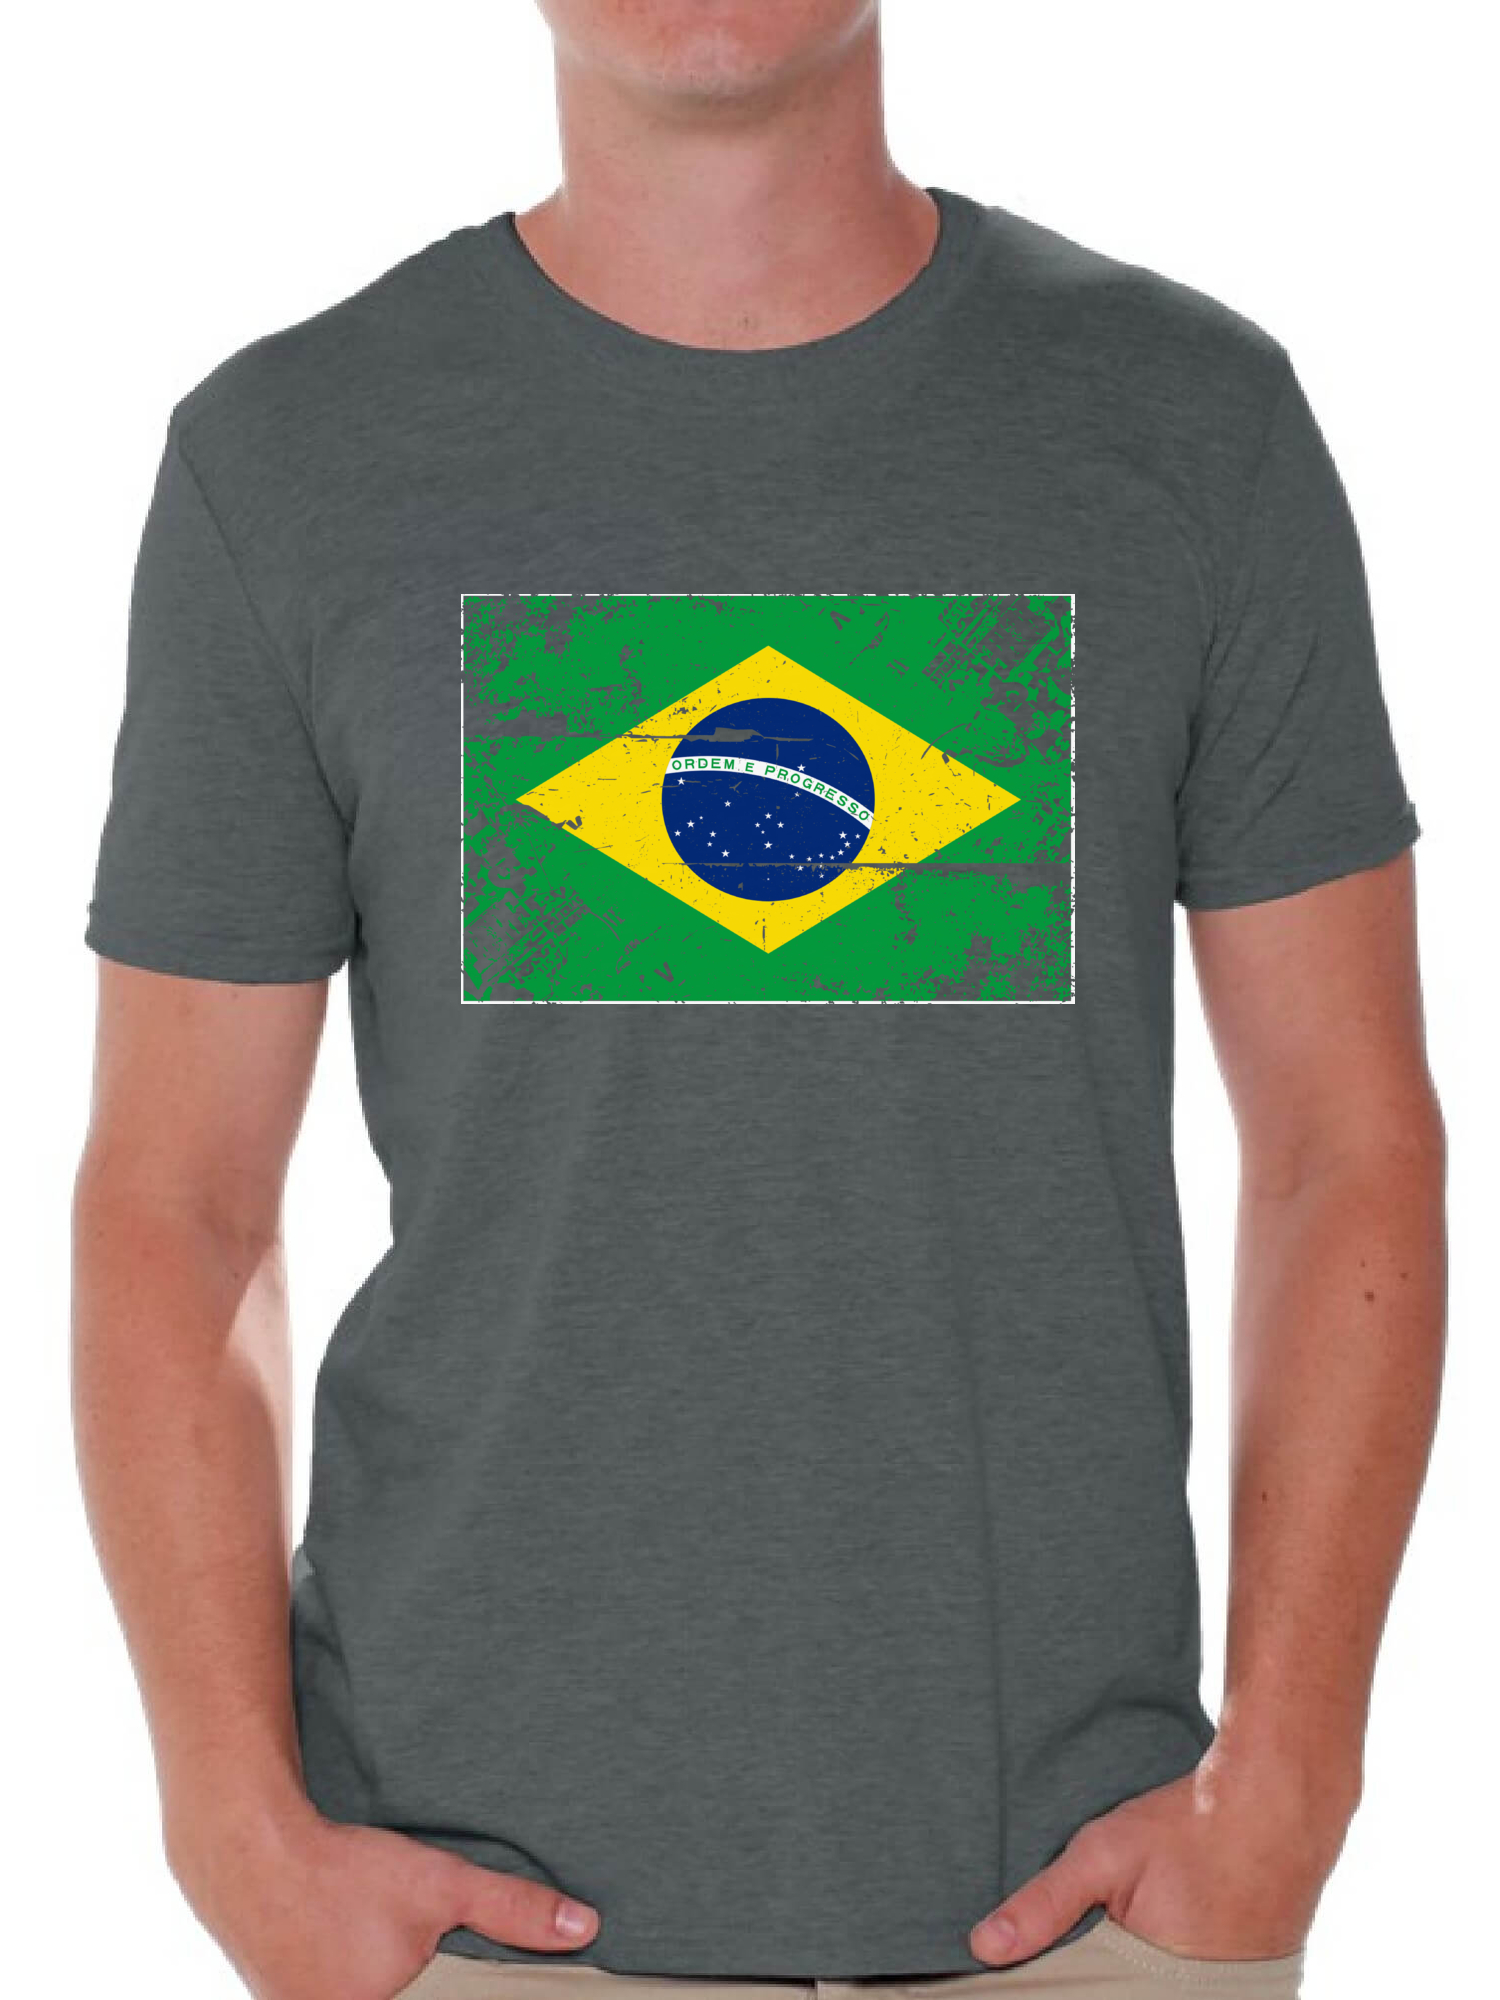 Awkward Styles Brazil Flag Shirt for Men Brazilian Soccer 2018 Tshirt Gifts from Brazil Flag of Brazil Brazilian Men Brazil Shirts for Men Brazil 2018 Tshirt Brazilian Gifts for Him Brazilian Flag - image 1 of 4